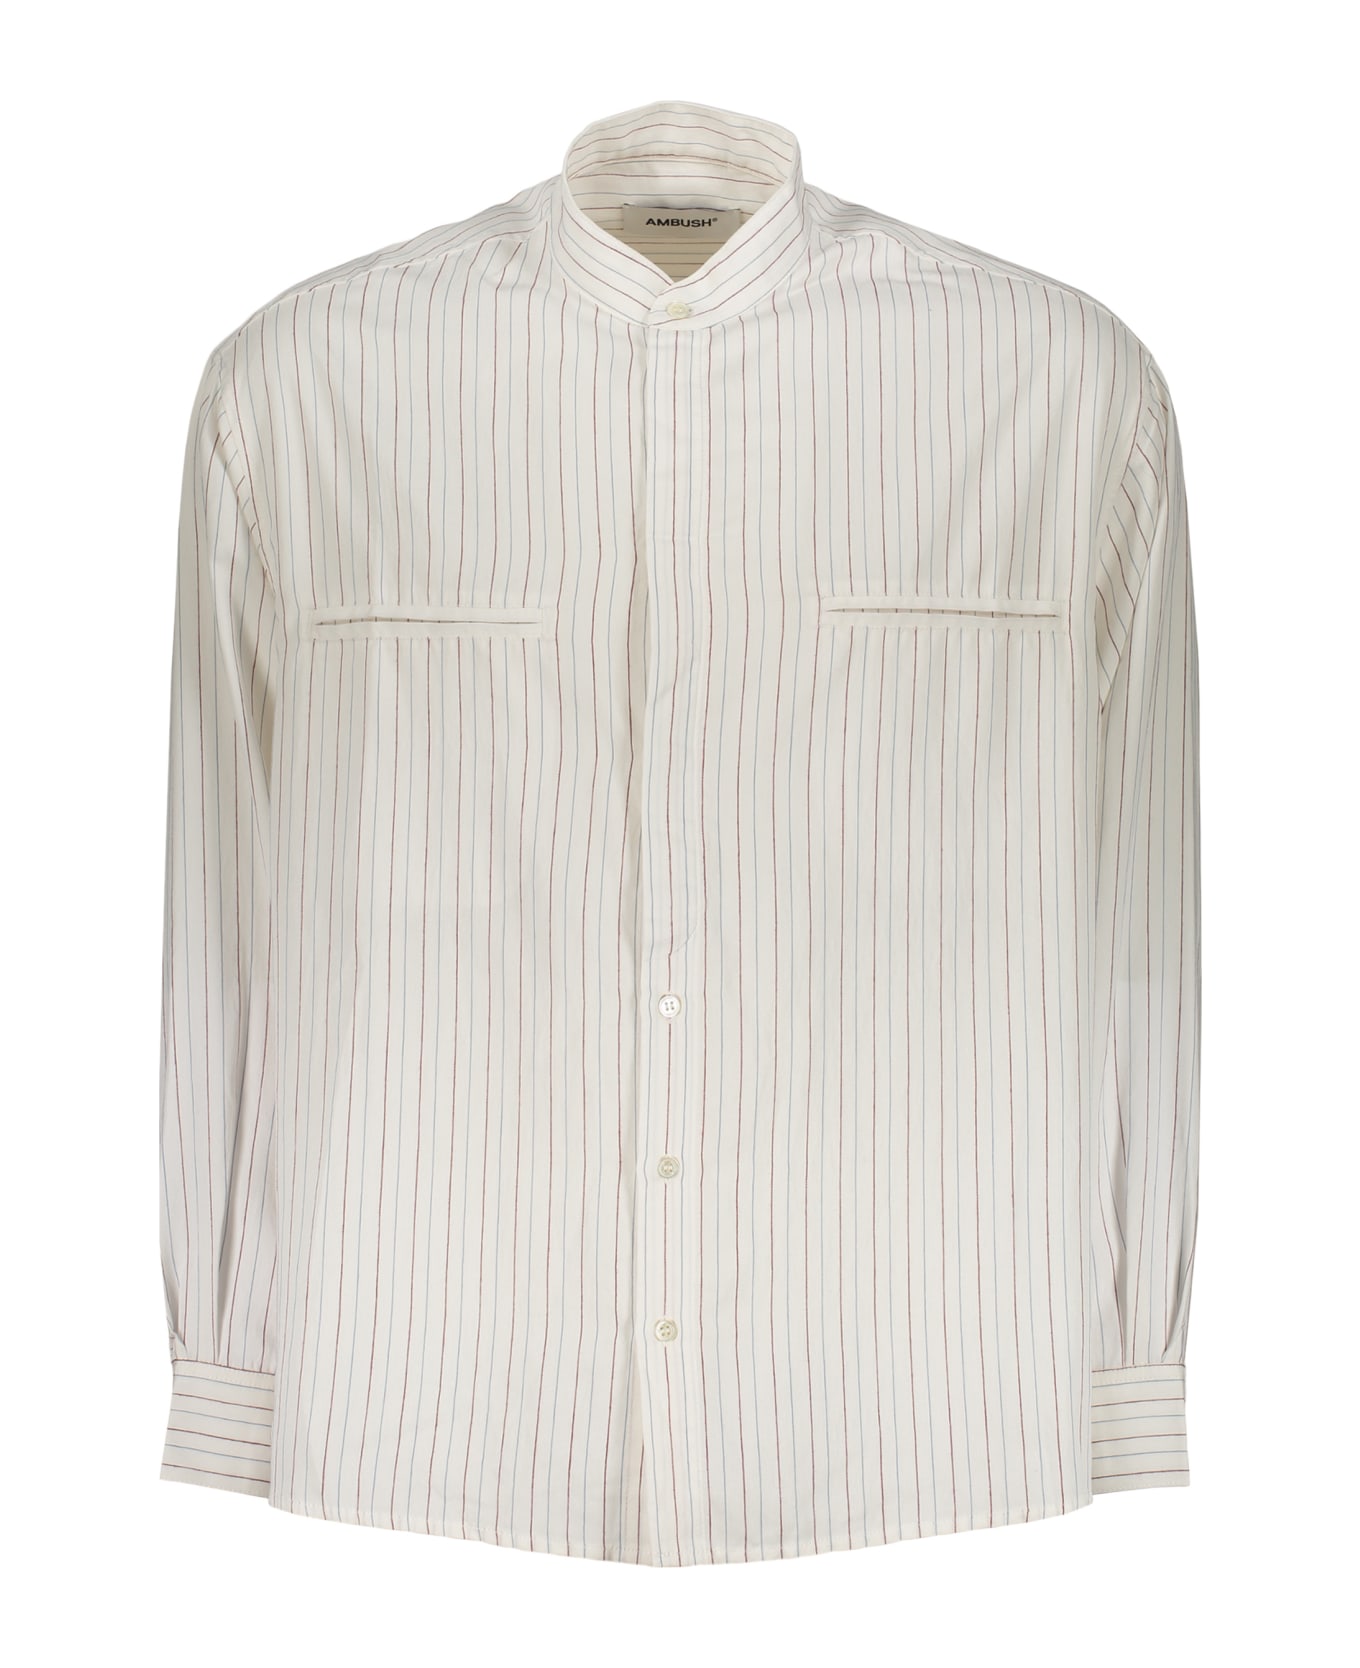 AMBUSH Striped Shirt - White